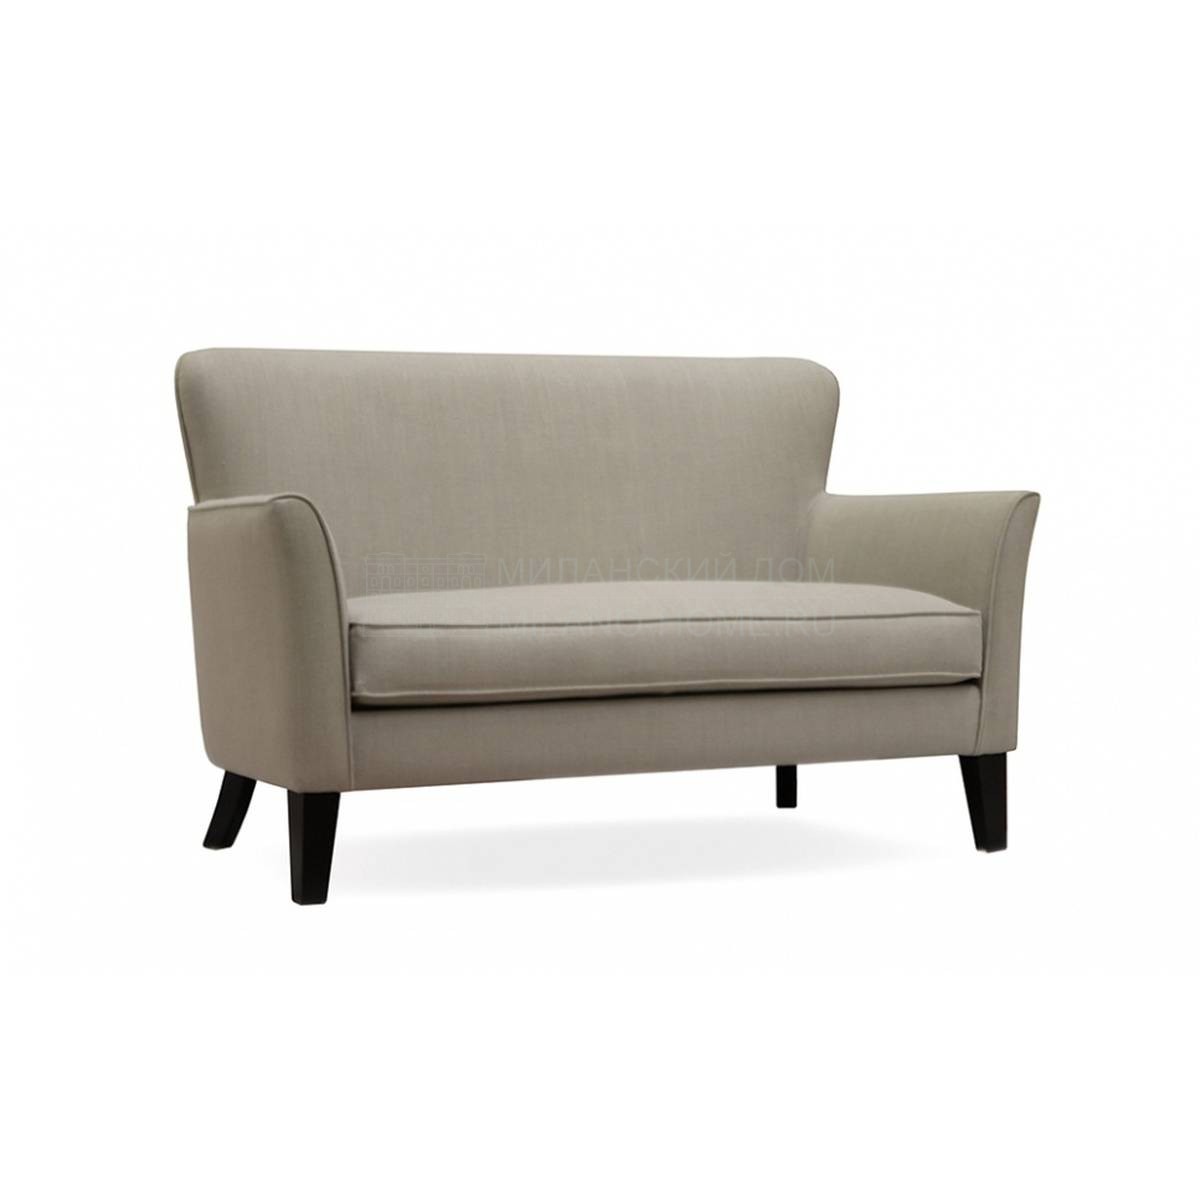 Прямой диван Prince/sofa из Испании фабрики MANUEL LARRAGA